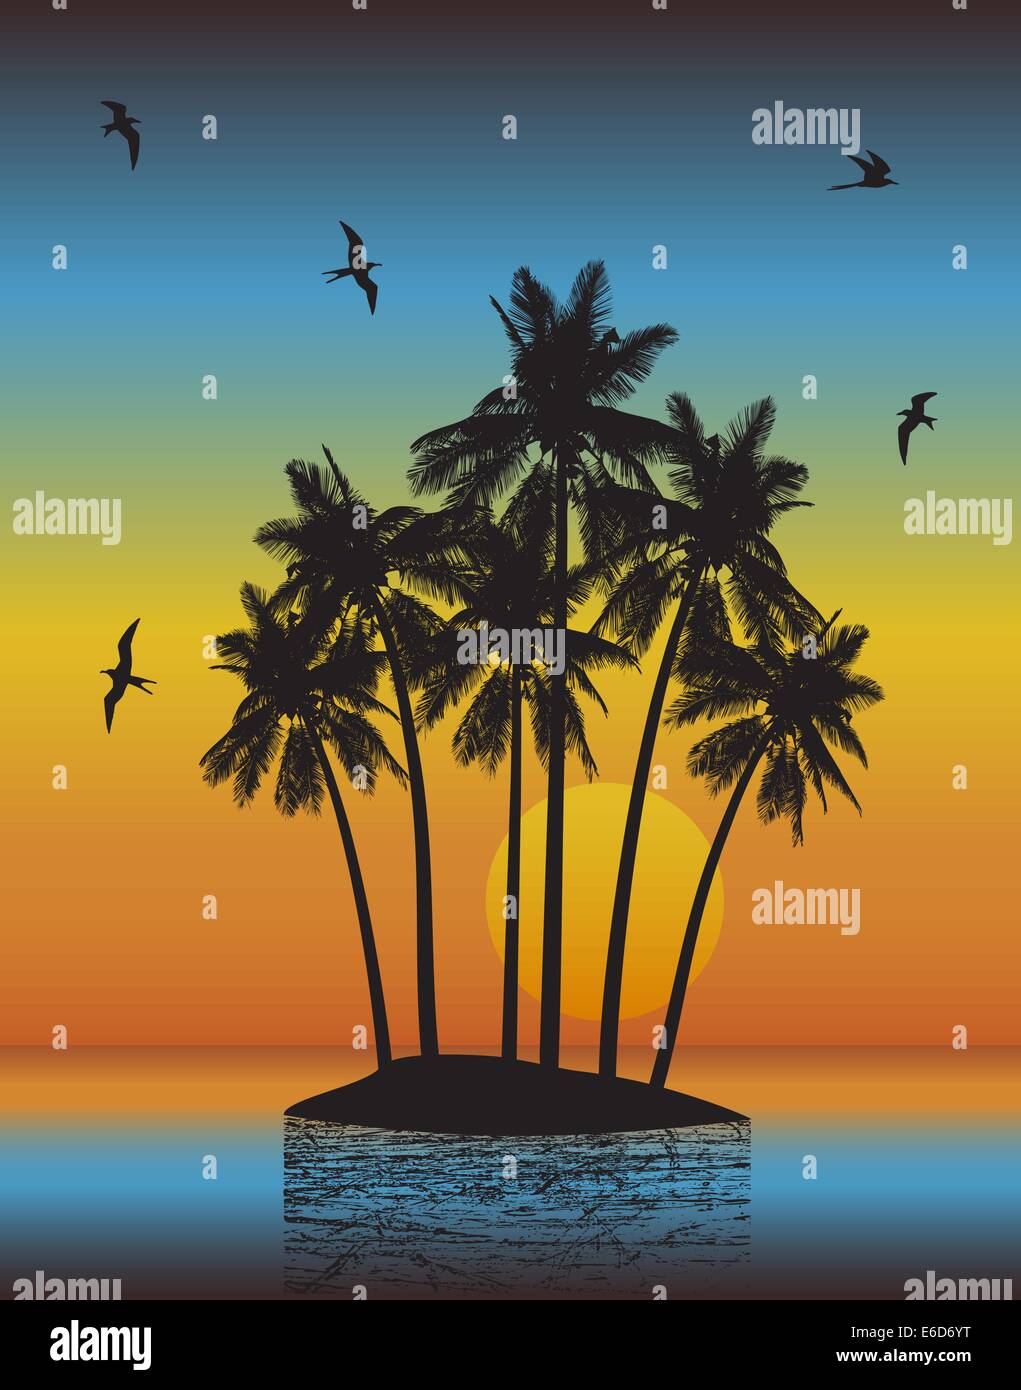 Illustrazione vettoriale di un'isola tropicale con il tramonto del sole uso dei gradienti Illustrazione Vettoriale